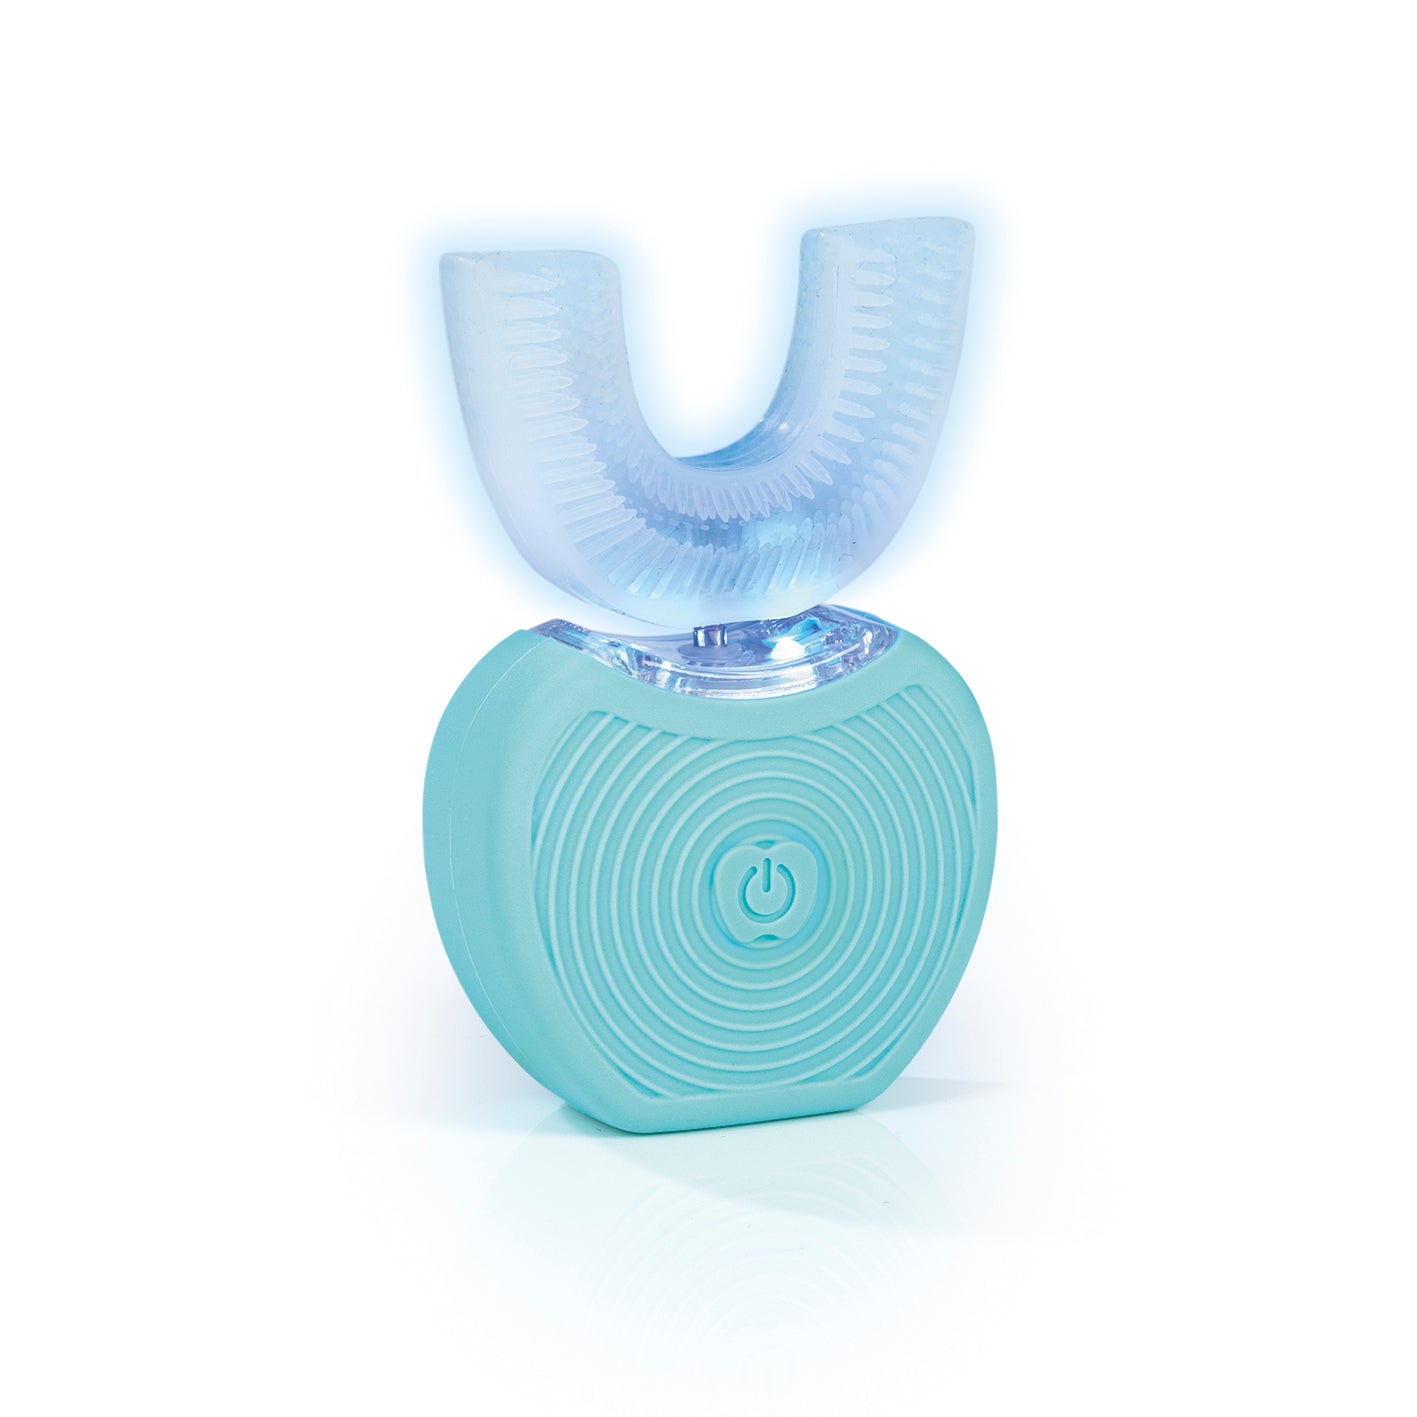 Schall-Zahnbürste - 360°-Borsten - LED-Blaulicht & Vibration - weiß/türkis